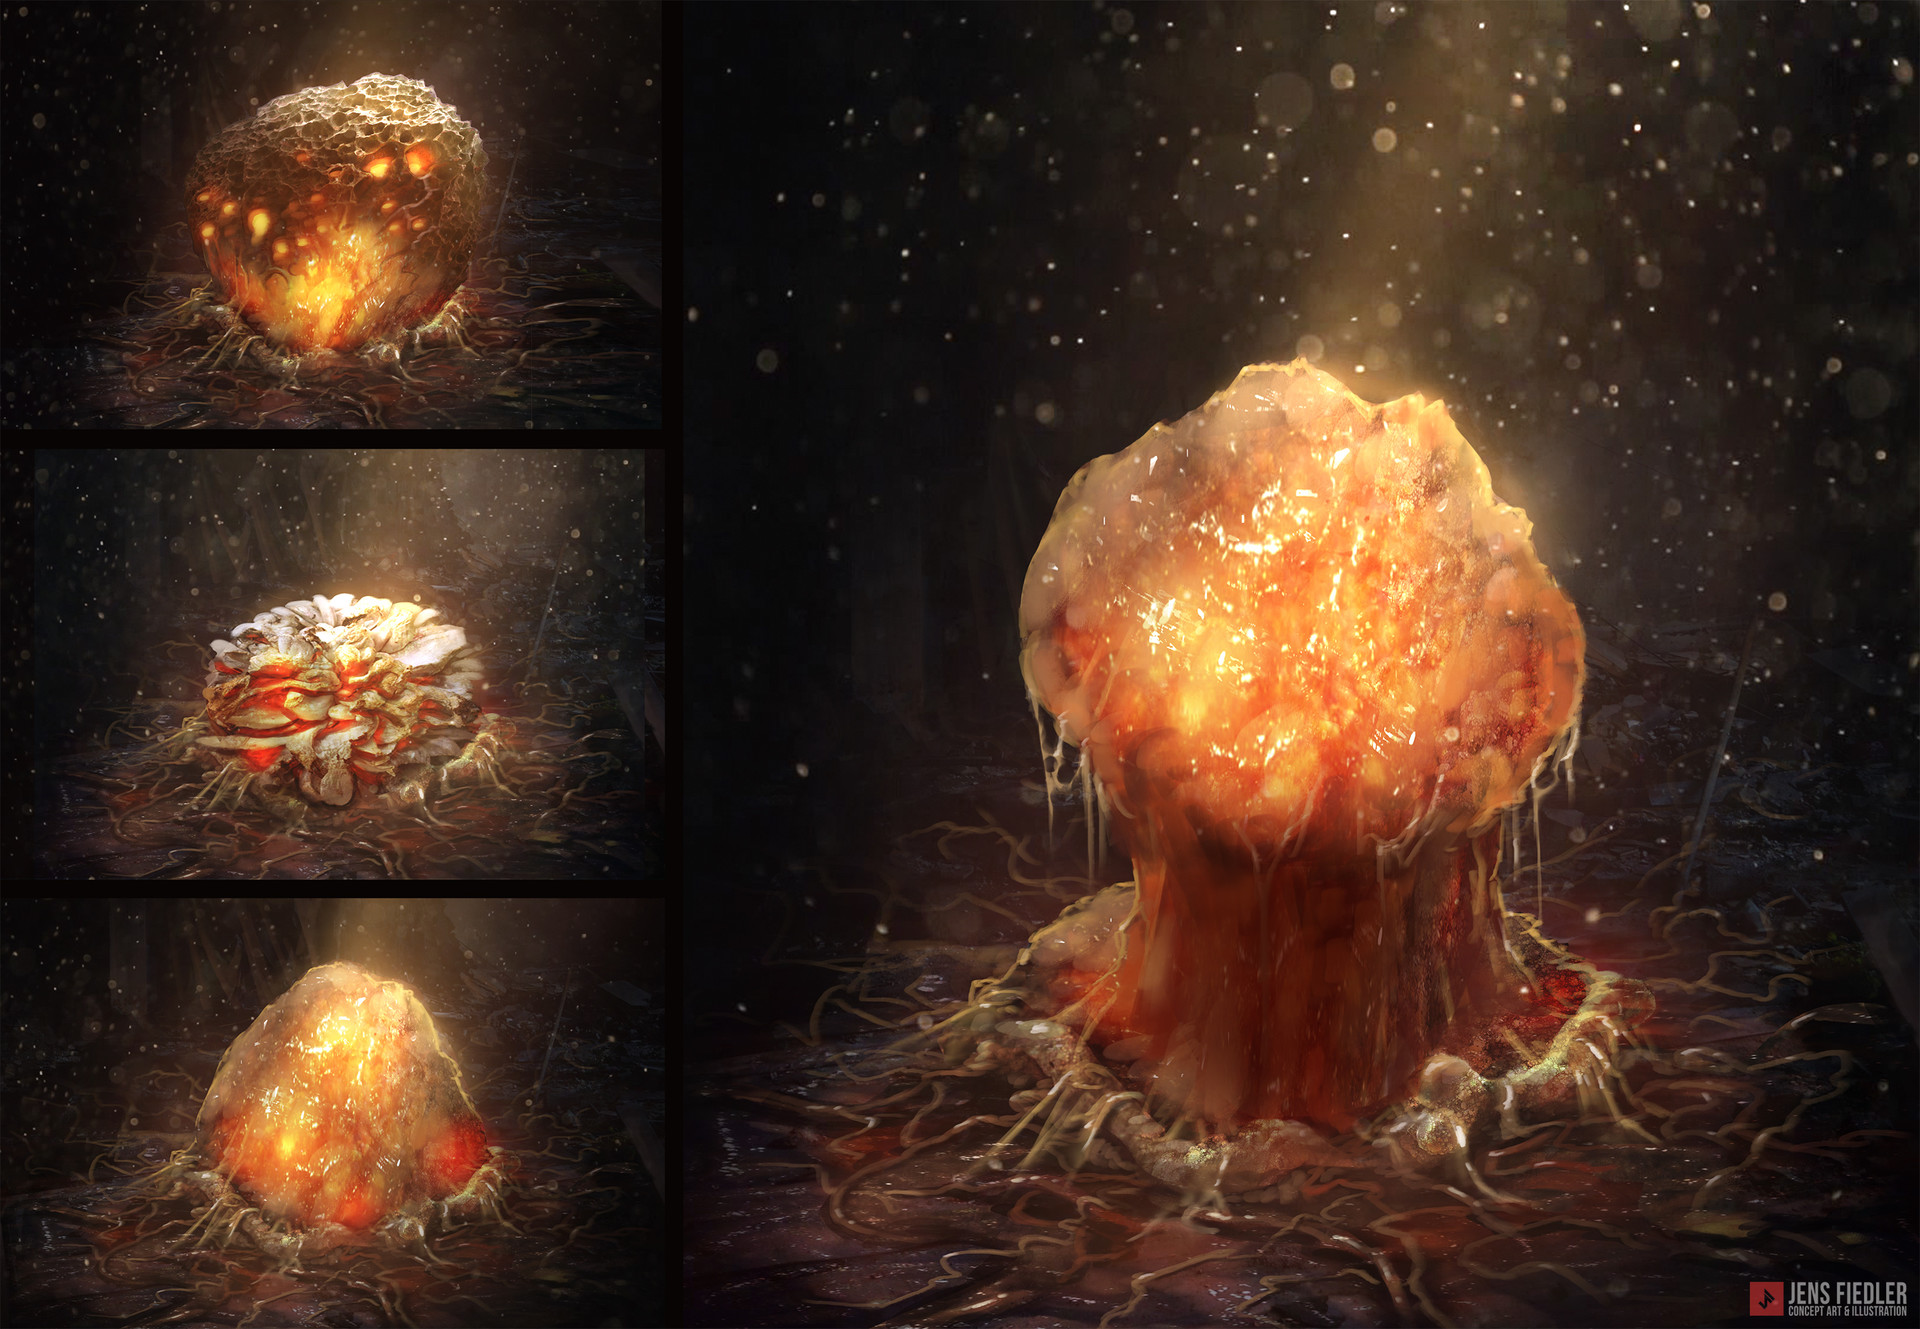 jens-fiedler-jens-fiedler-alien-mushrooms.jpg